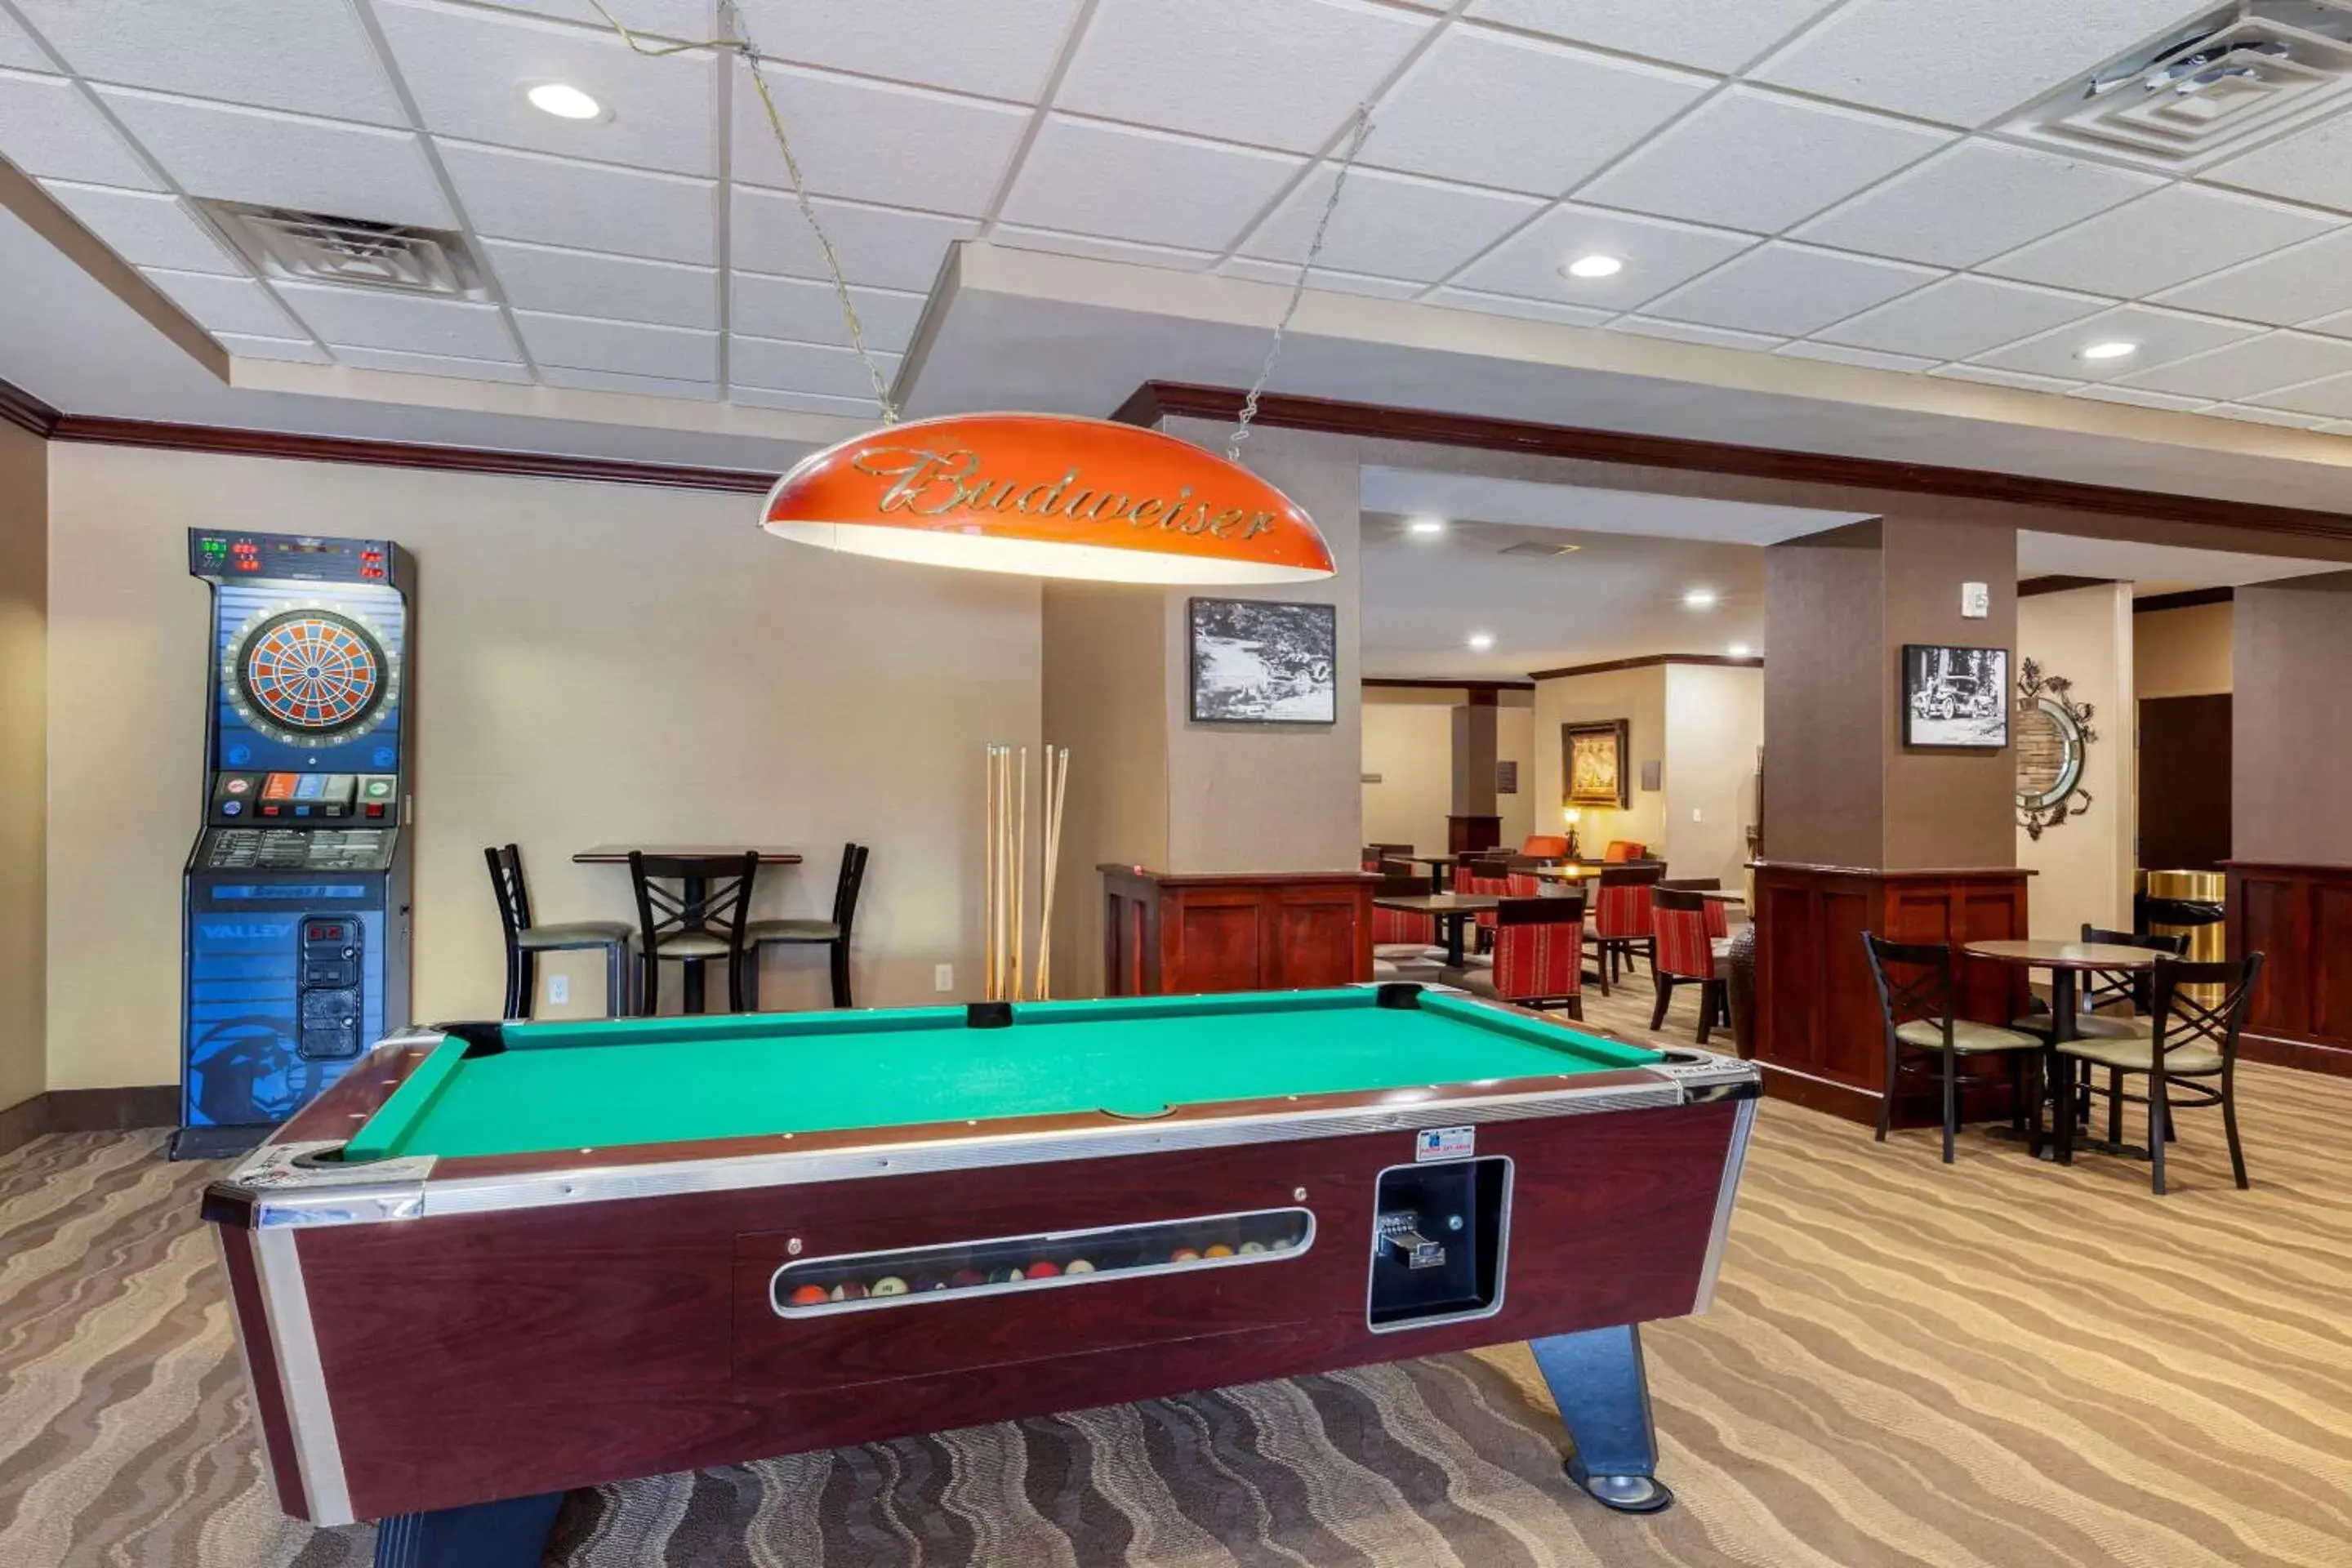 Restaurant/places to eat, Billiards in Comfort Inn Plover-Stevens Point